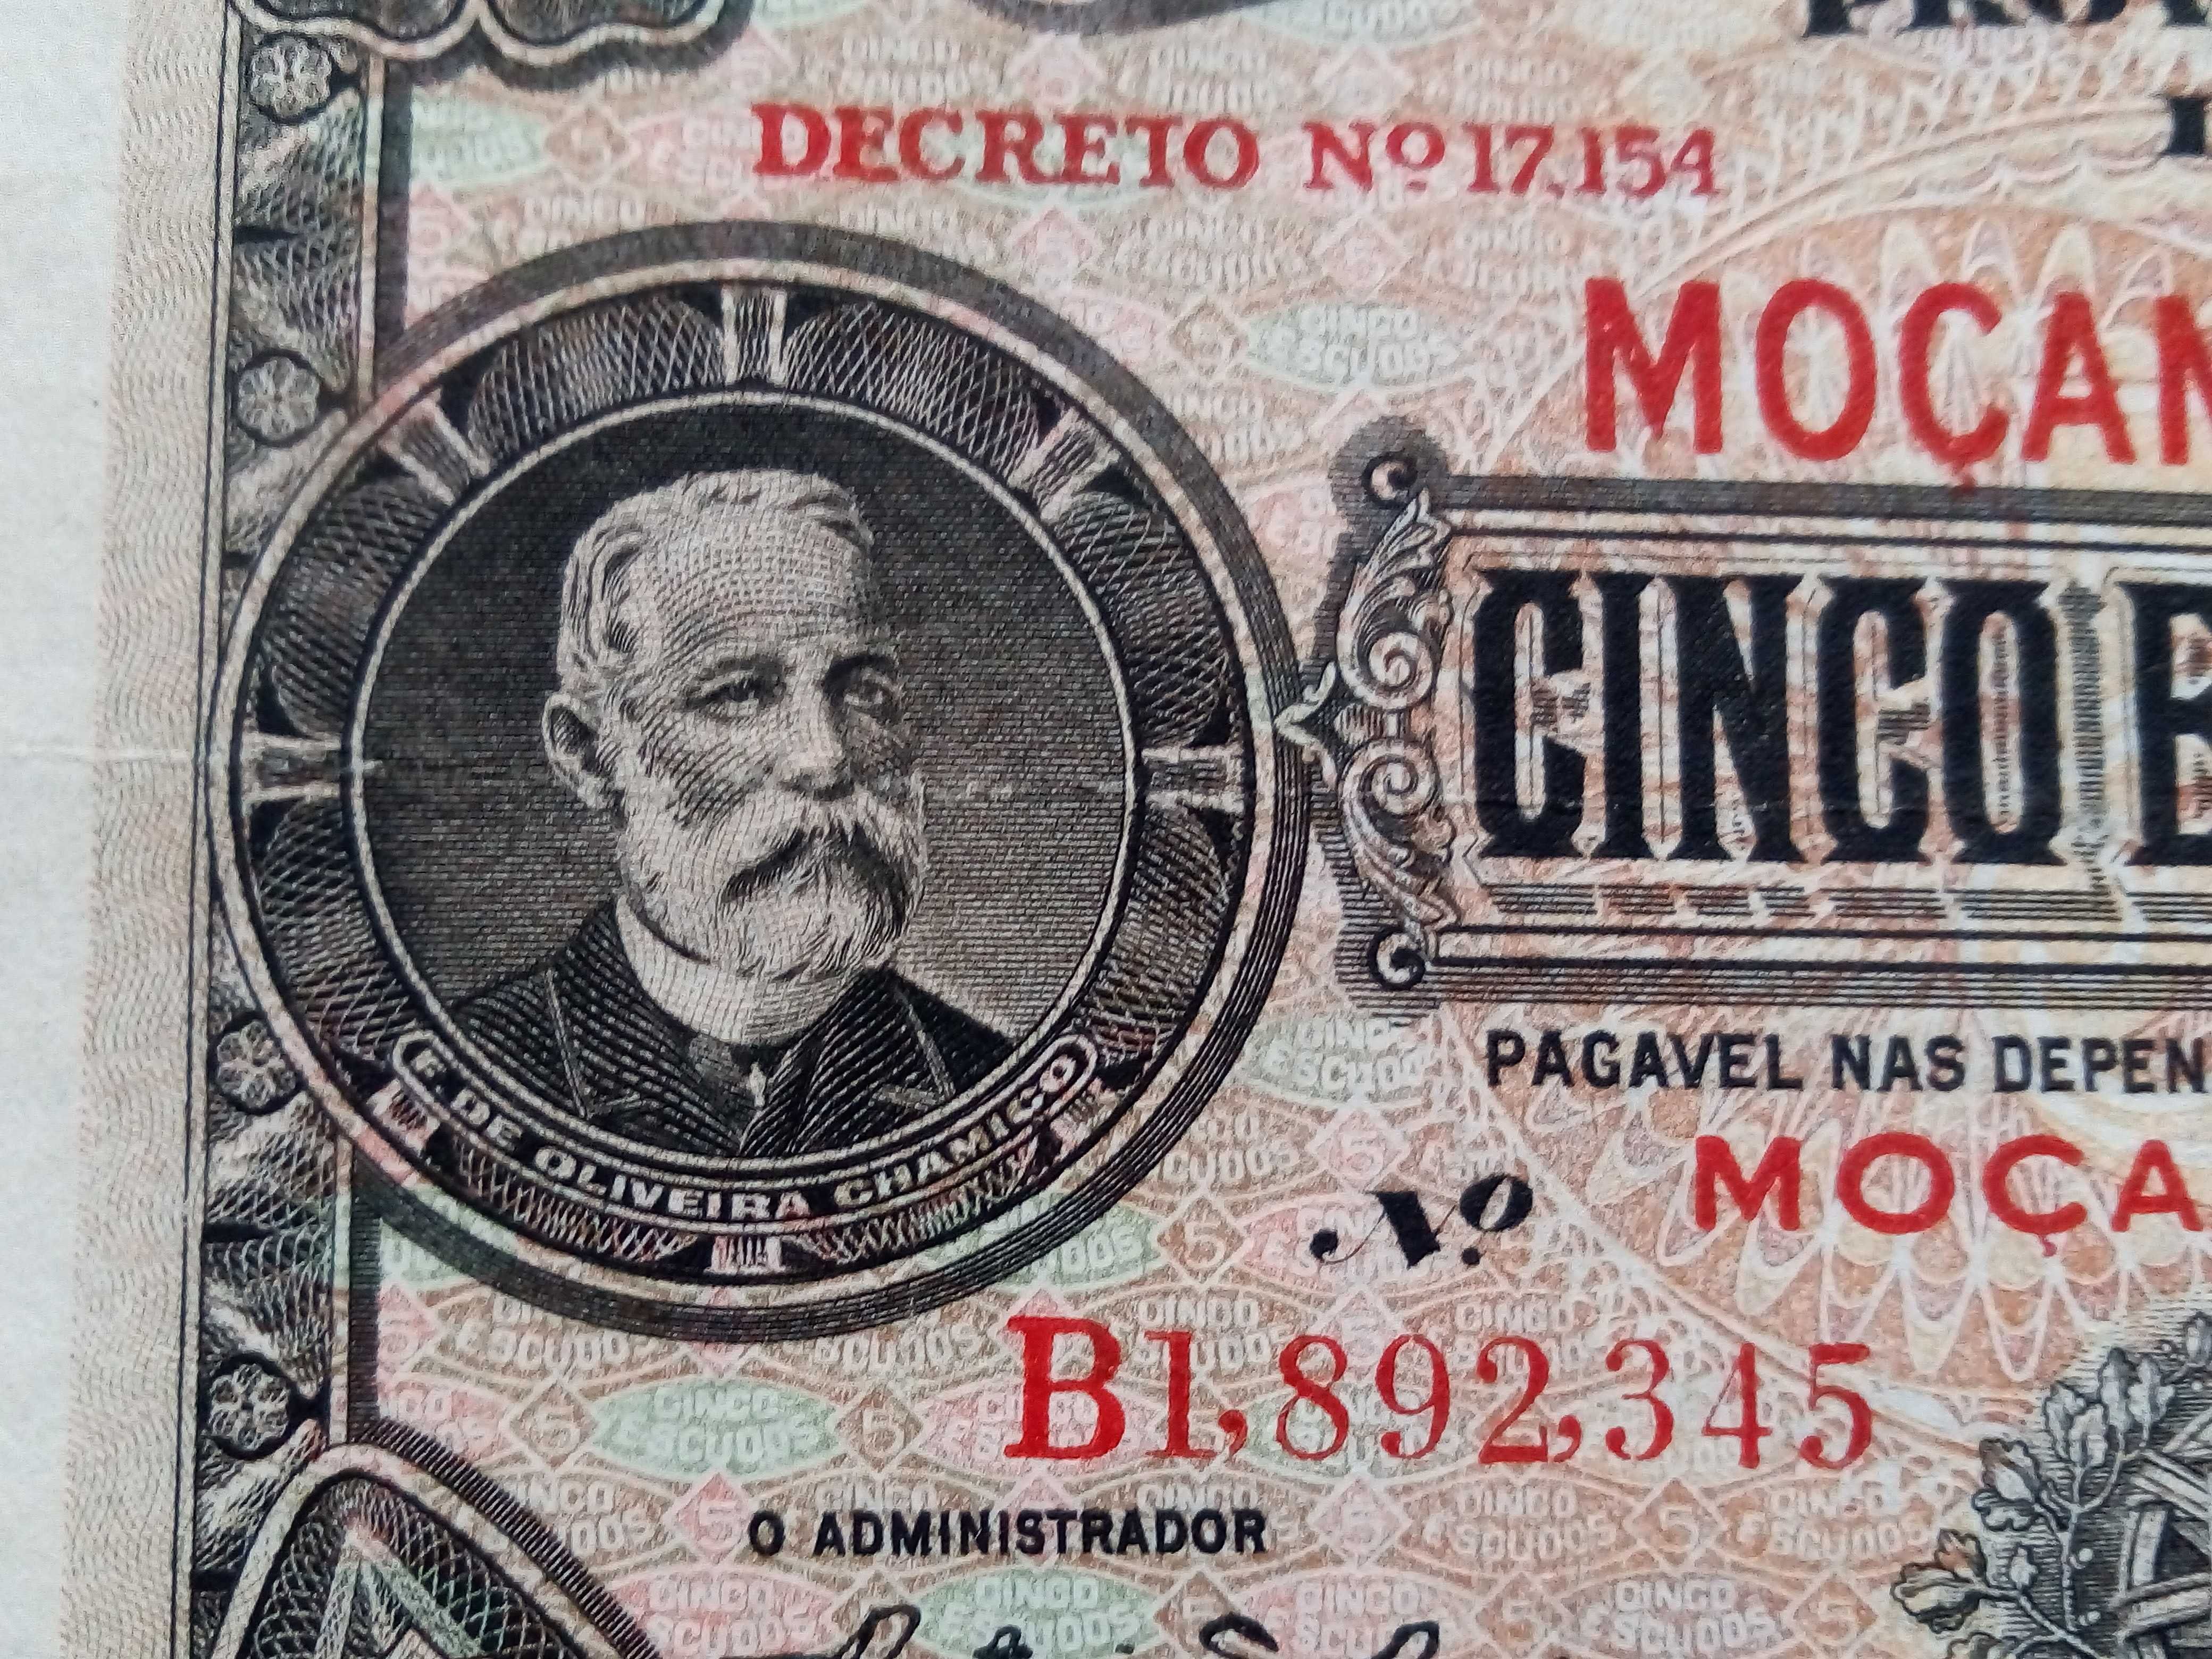 1 nota de cinco escudos (5$00) 1941 Oliveira Chamiço  Moçambique rara